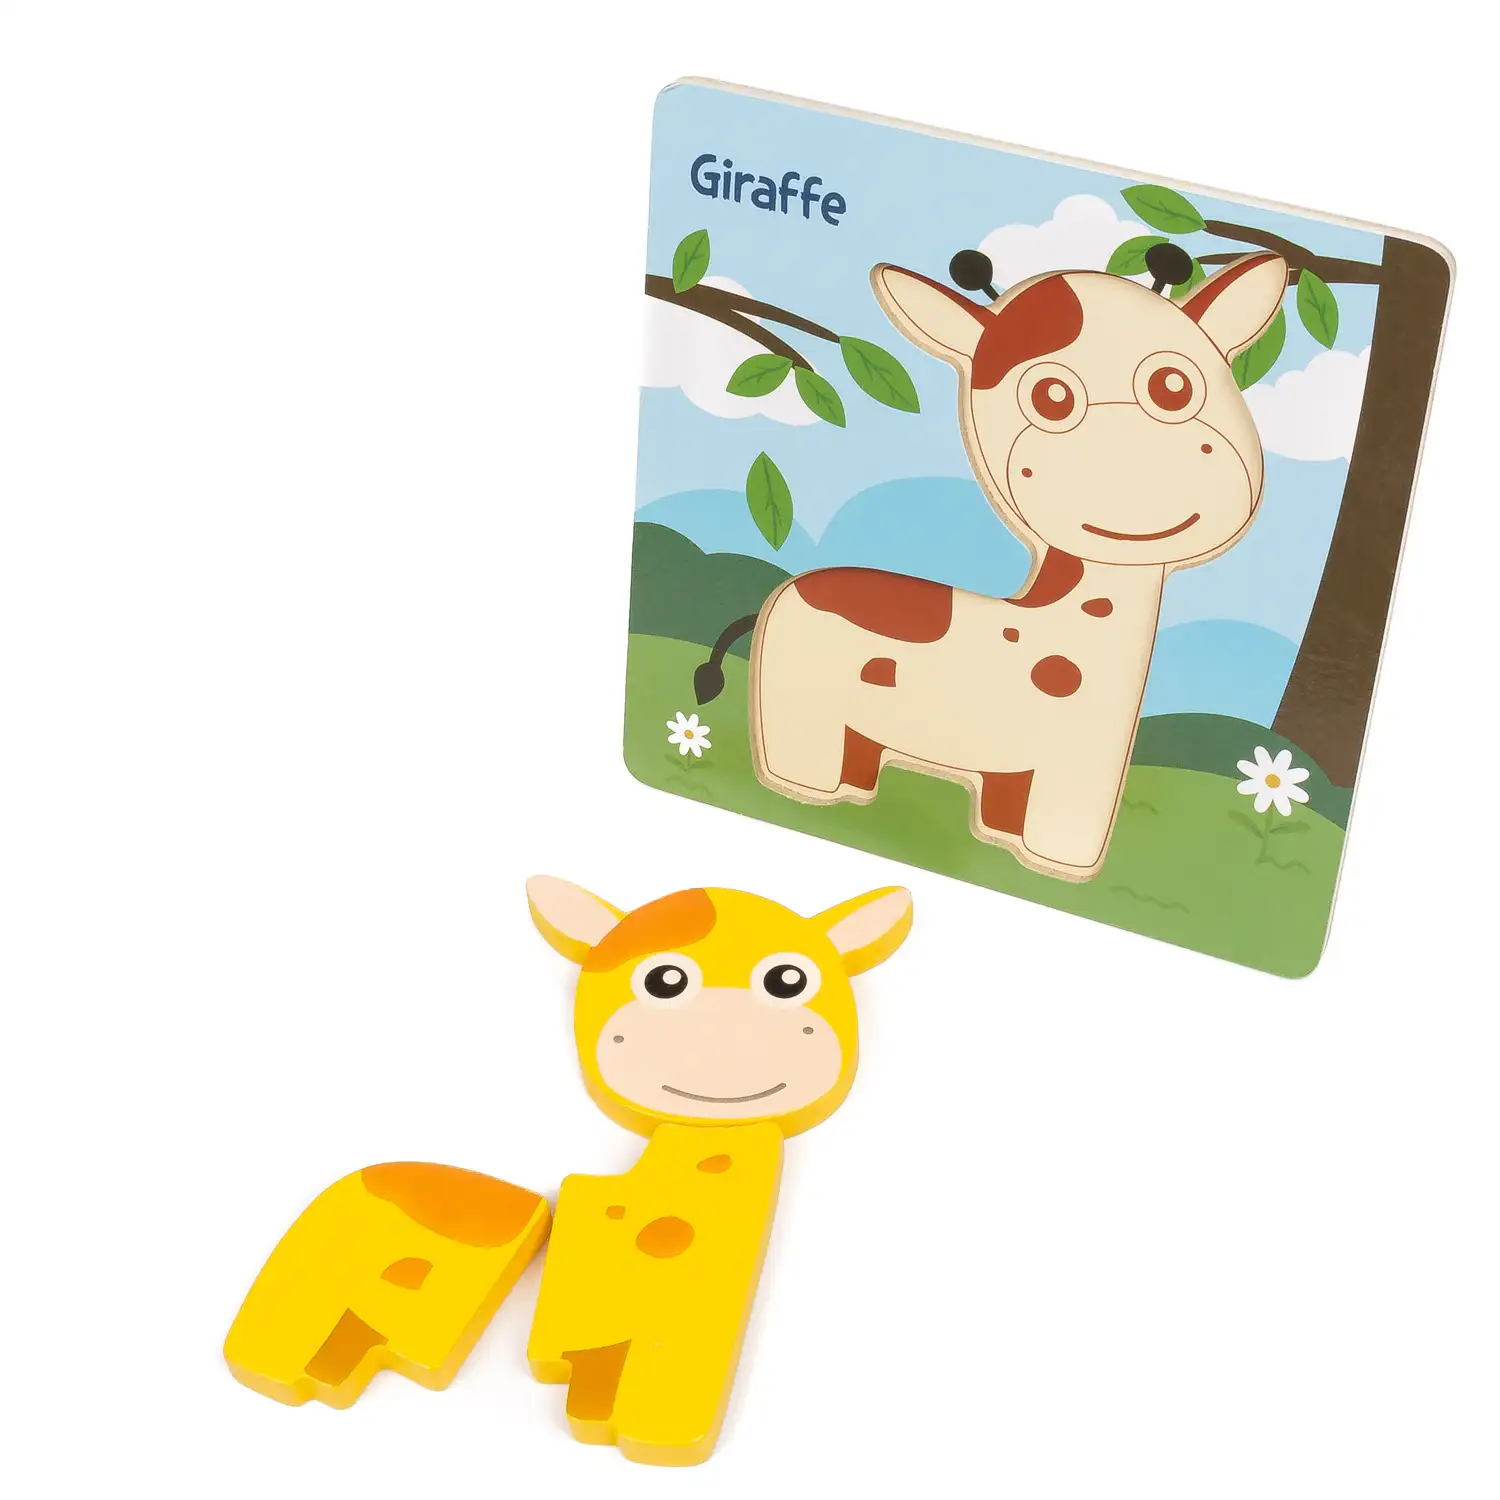 Puzle de madera para niños, de 3 piezas. Diseño jirafa.